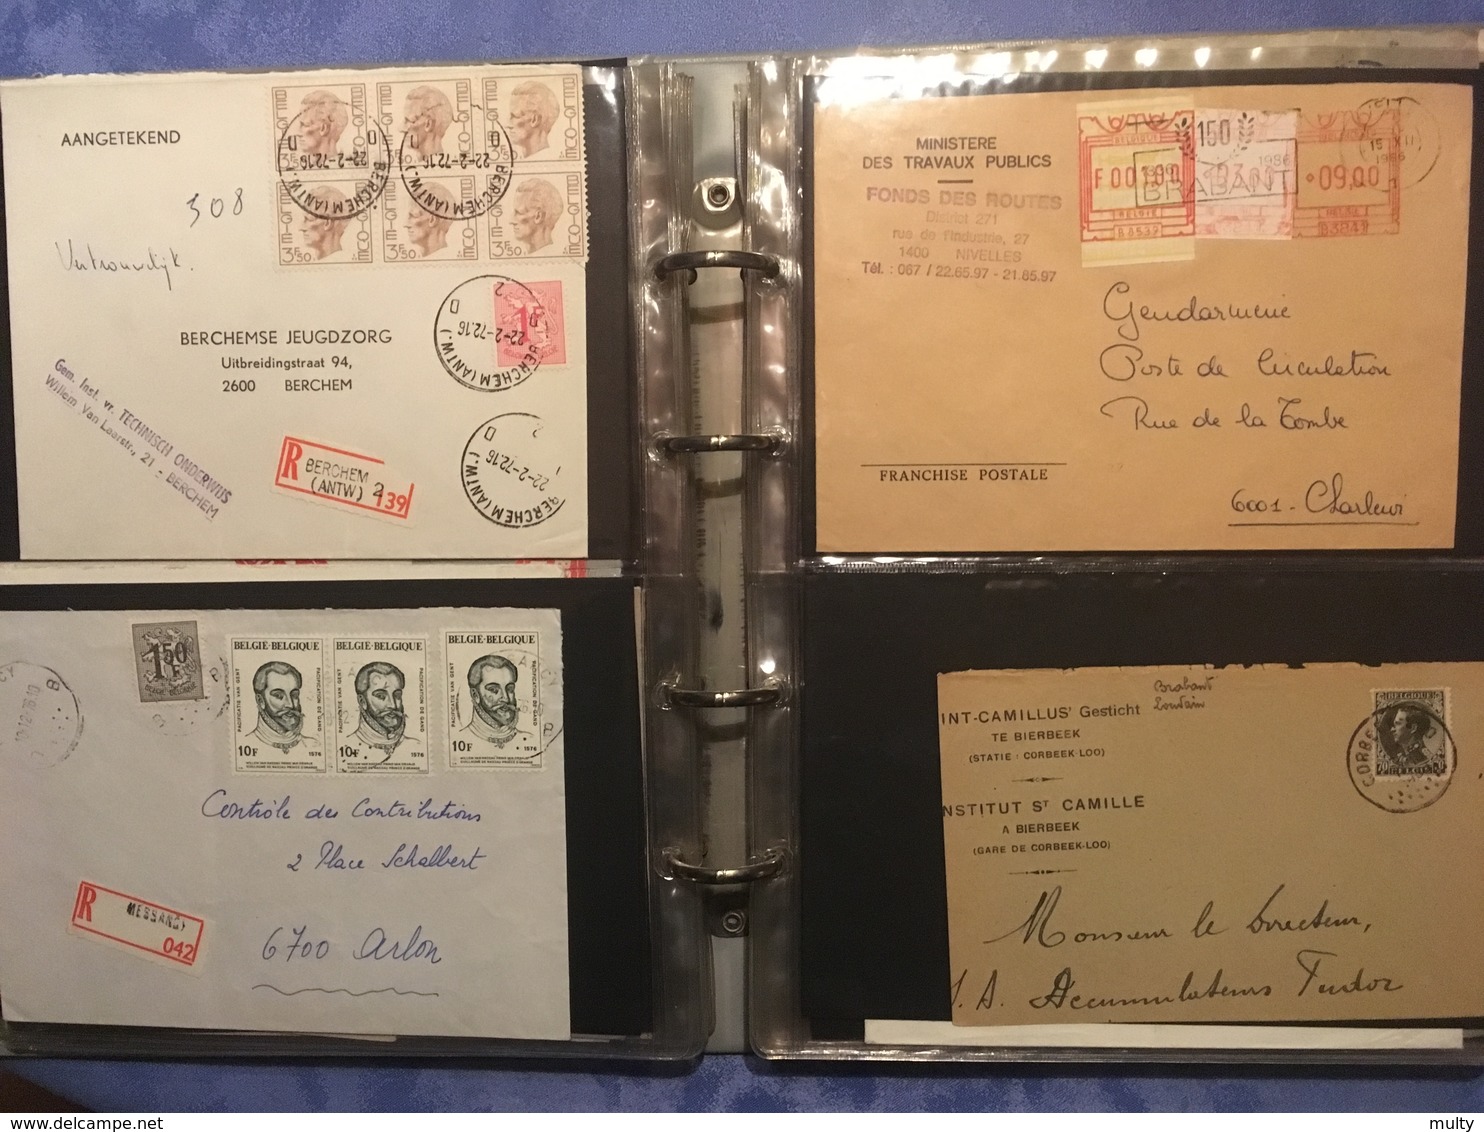 Opruiming / Liquidation Belgische briefomslagen, Lettres Belge / Militaire post, gelegenheidsstempels ..... + 3 kg.